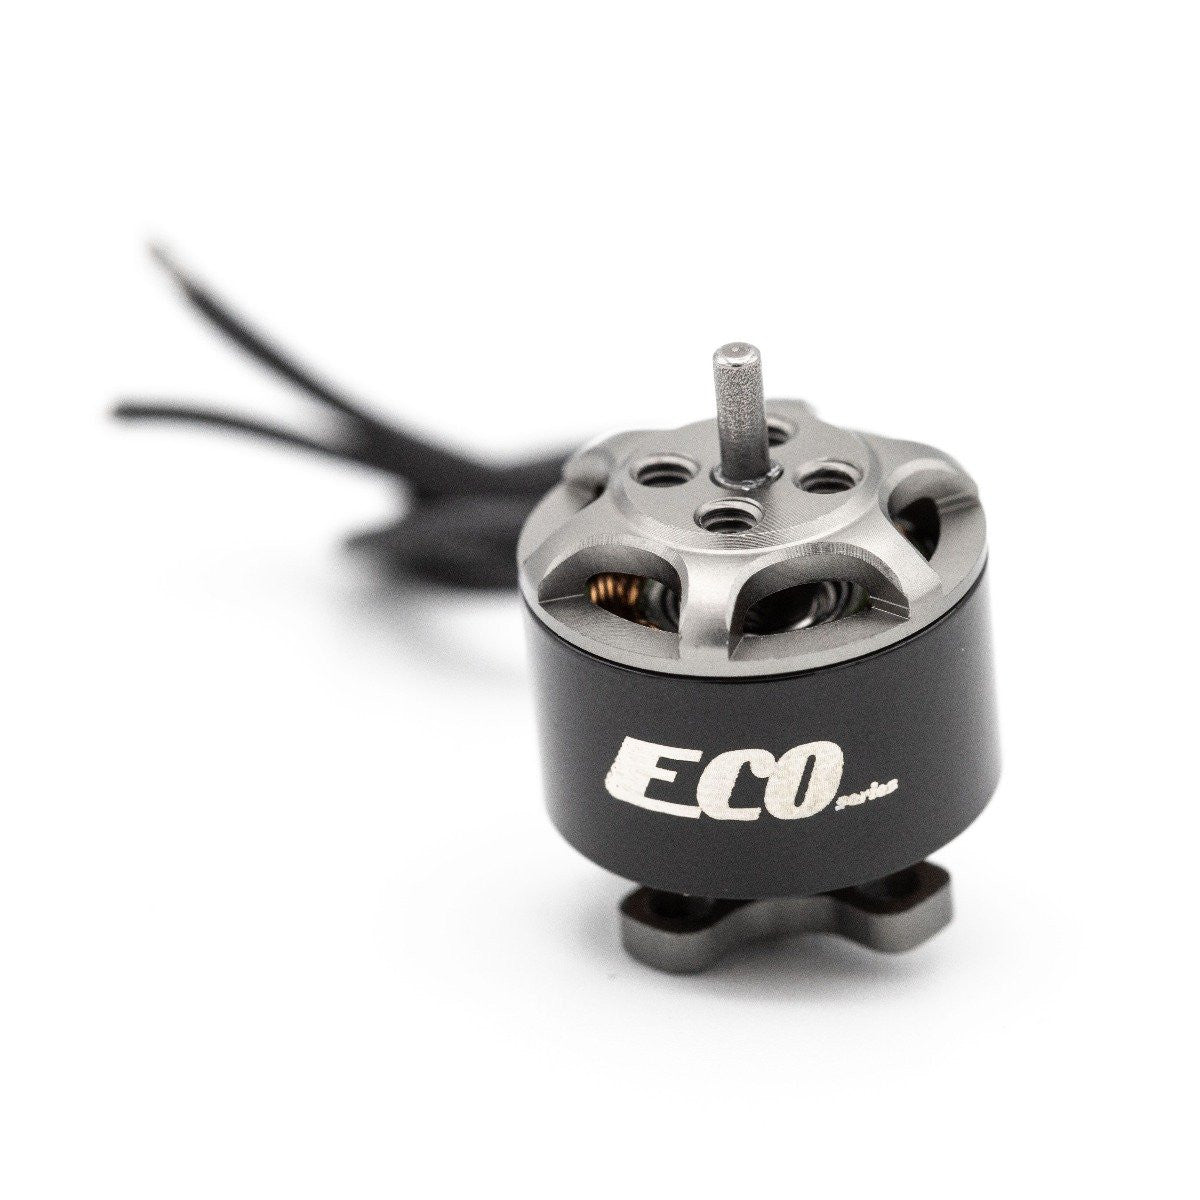 Moteur Emax ECO II Series 2306 - 1900KV Brushless - Drone FPV Racer